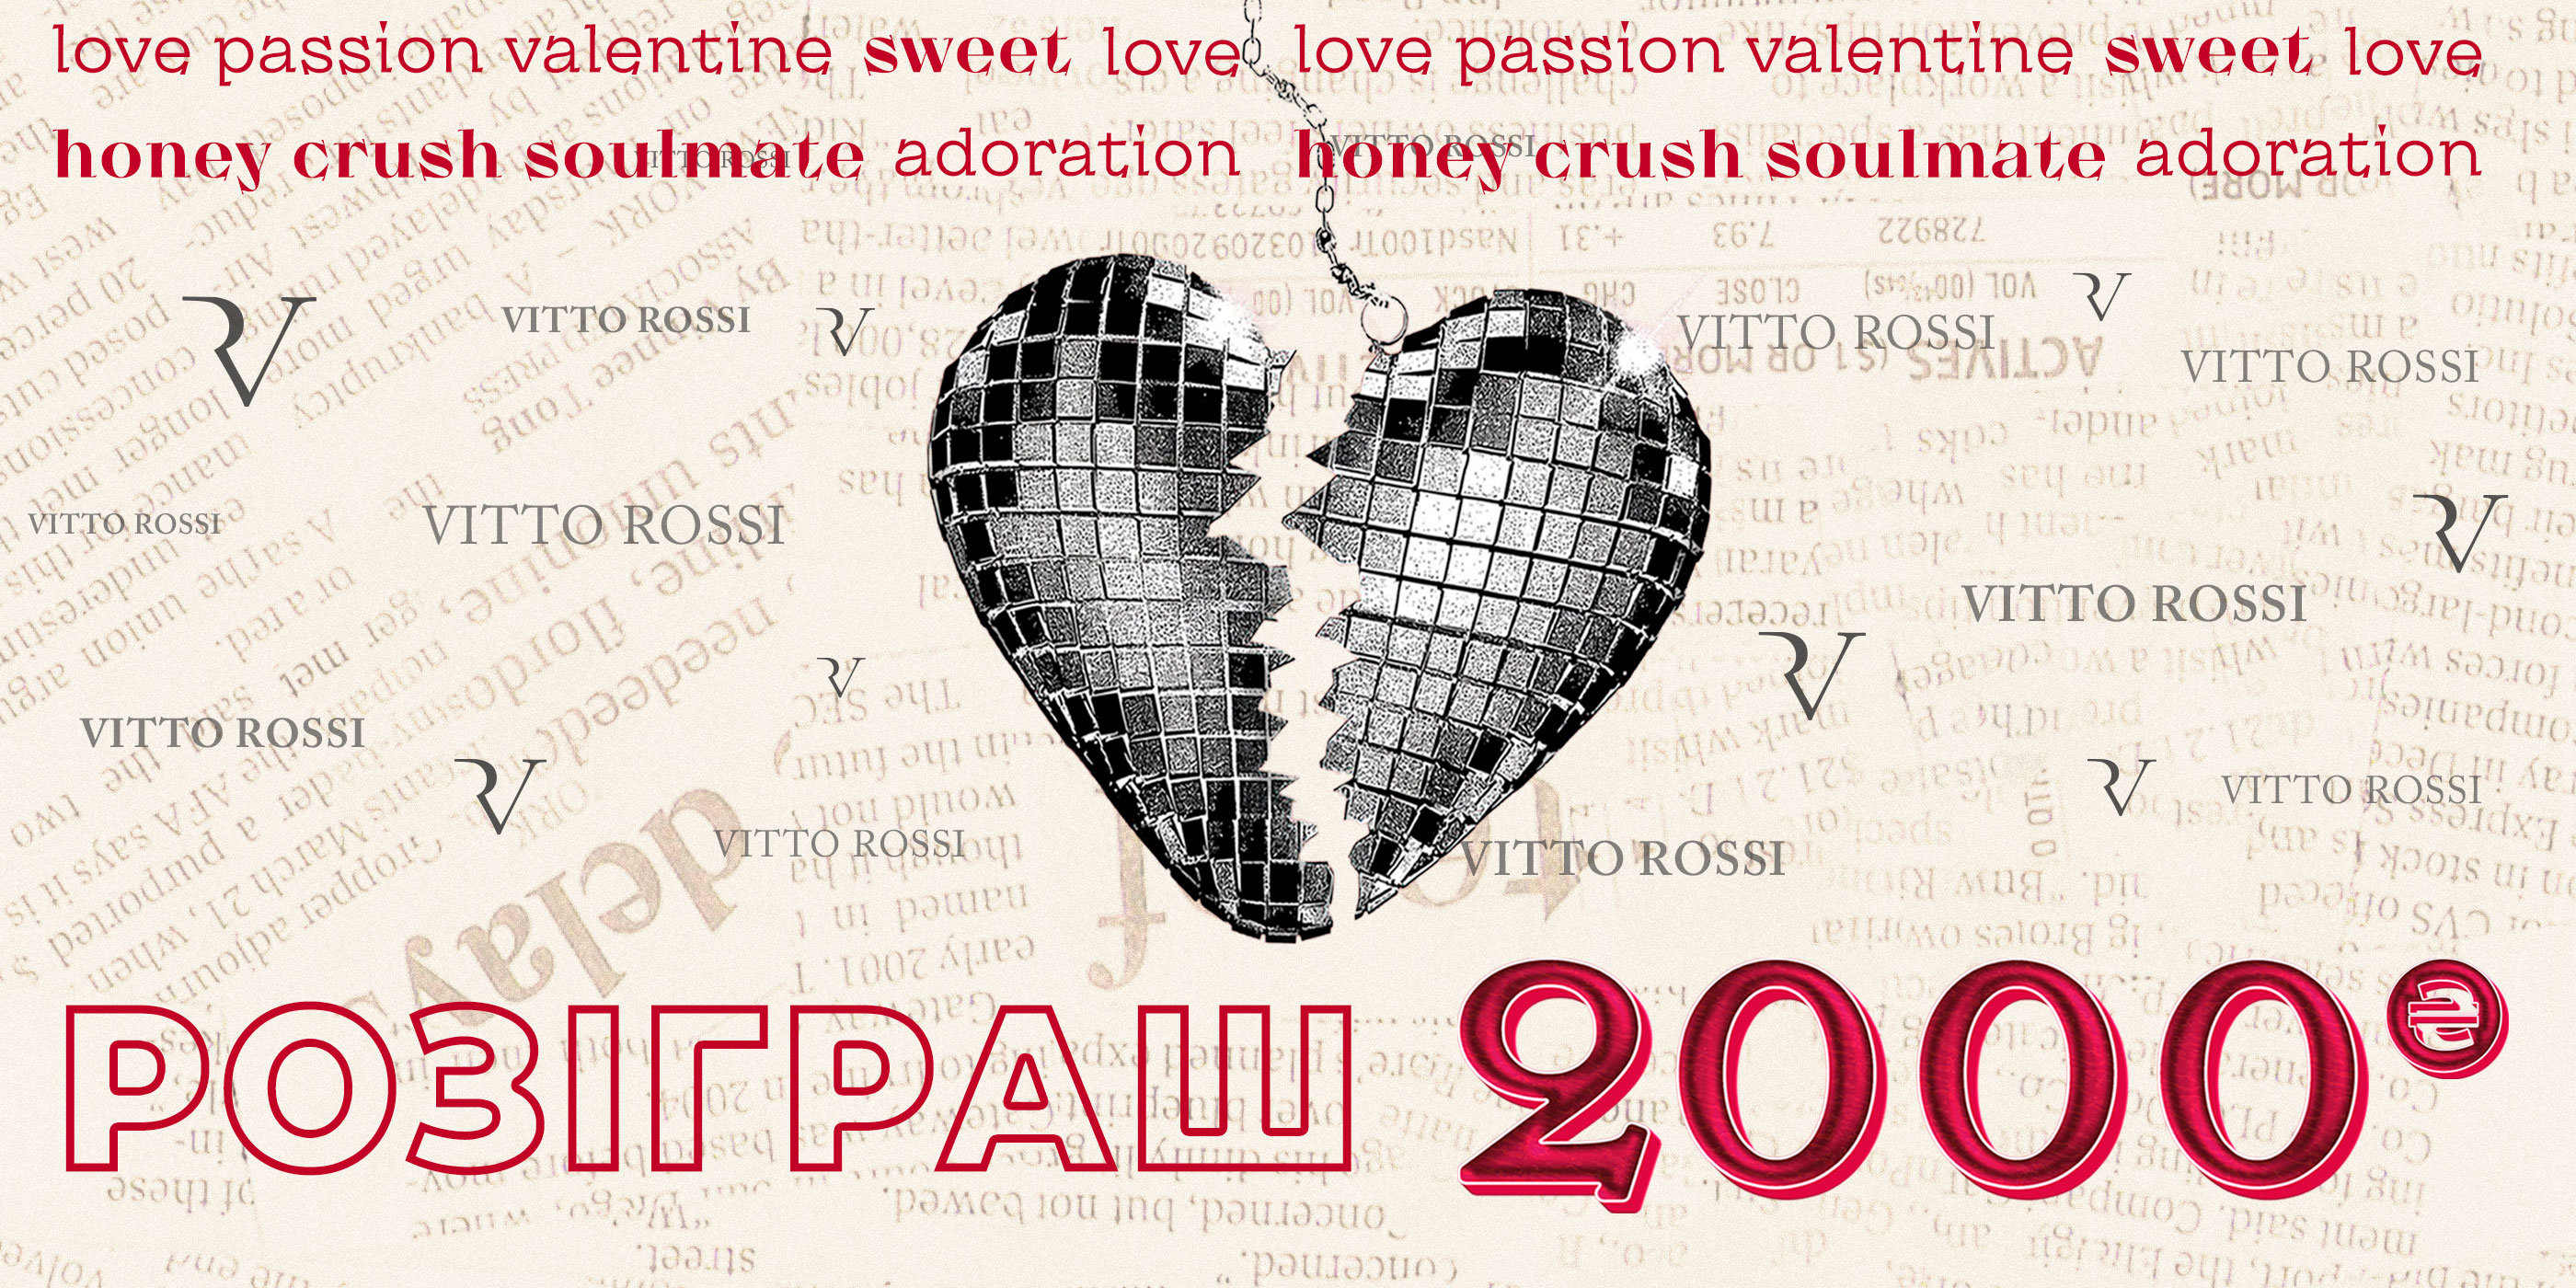 Valentine's Day  Vitto Rossi